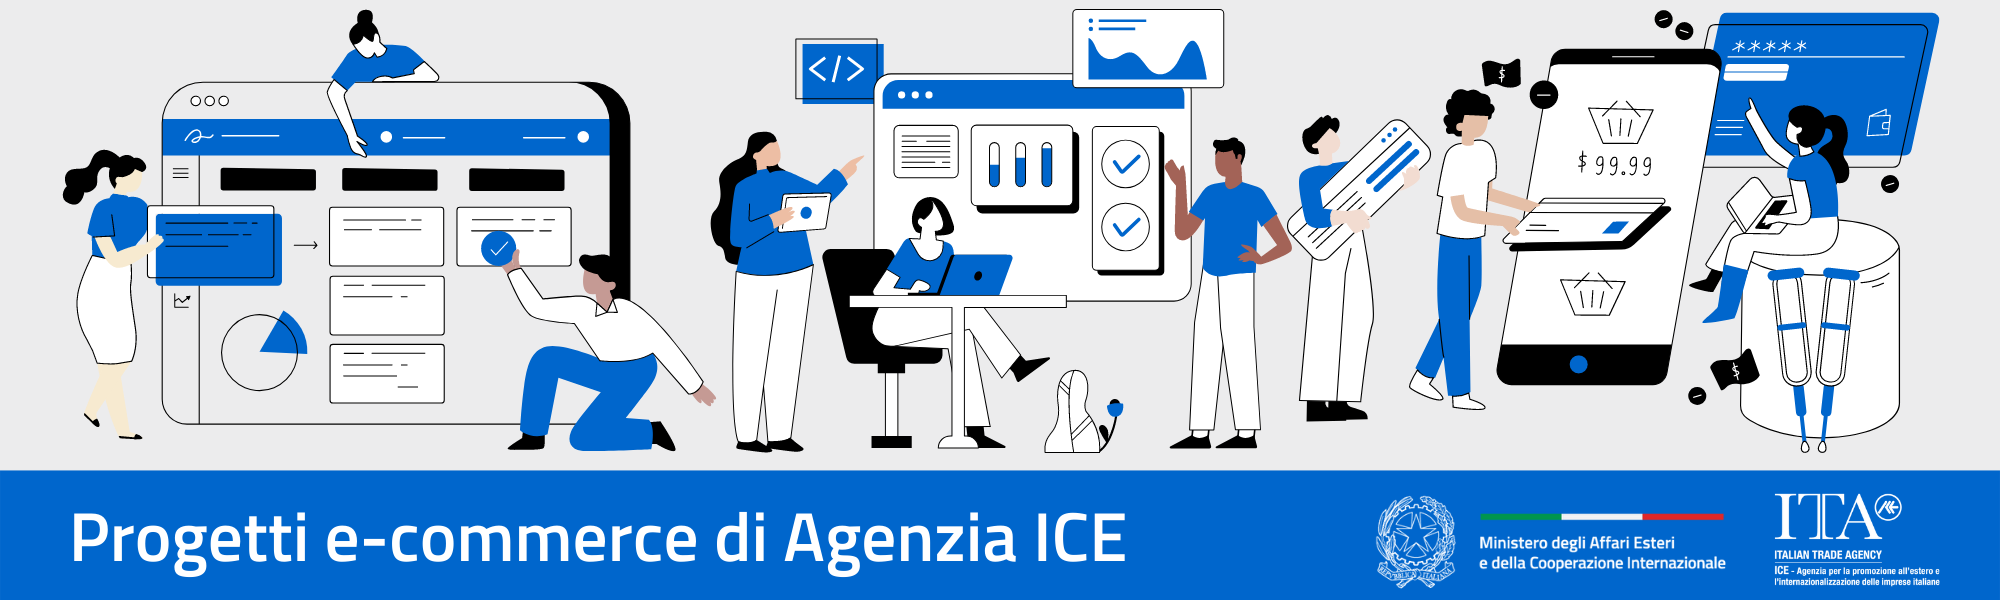 Progetti e-commerce Agenzia ICE